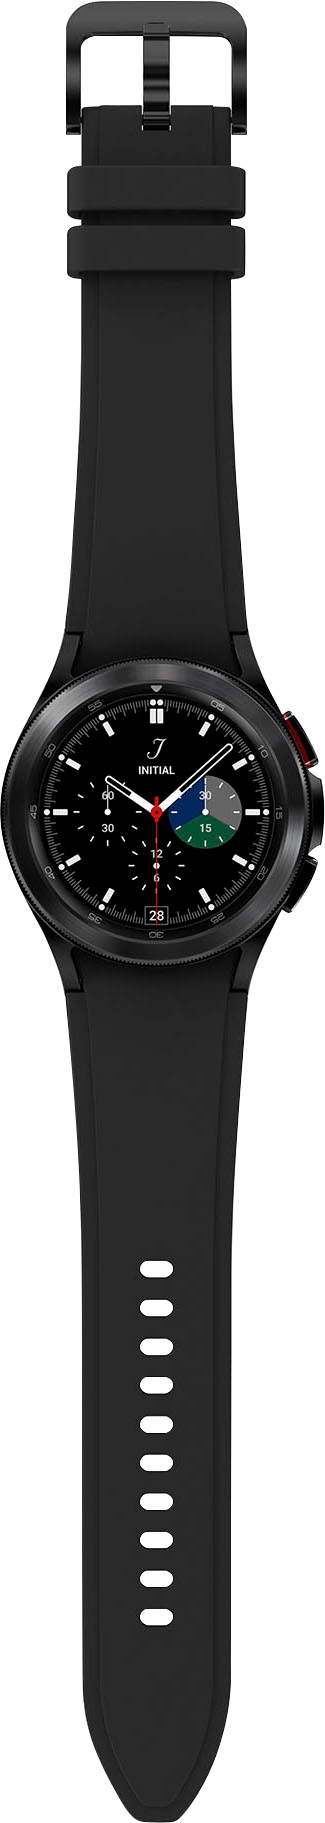 Smartwatch (Wear 4 Fitness Uhr, | Gesundheitsfunktionen) by Google BAUR Tracker, Samsung Watch OS BT«, Fitness »Galaxy classic-42mm